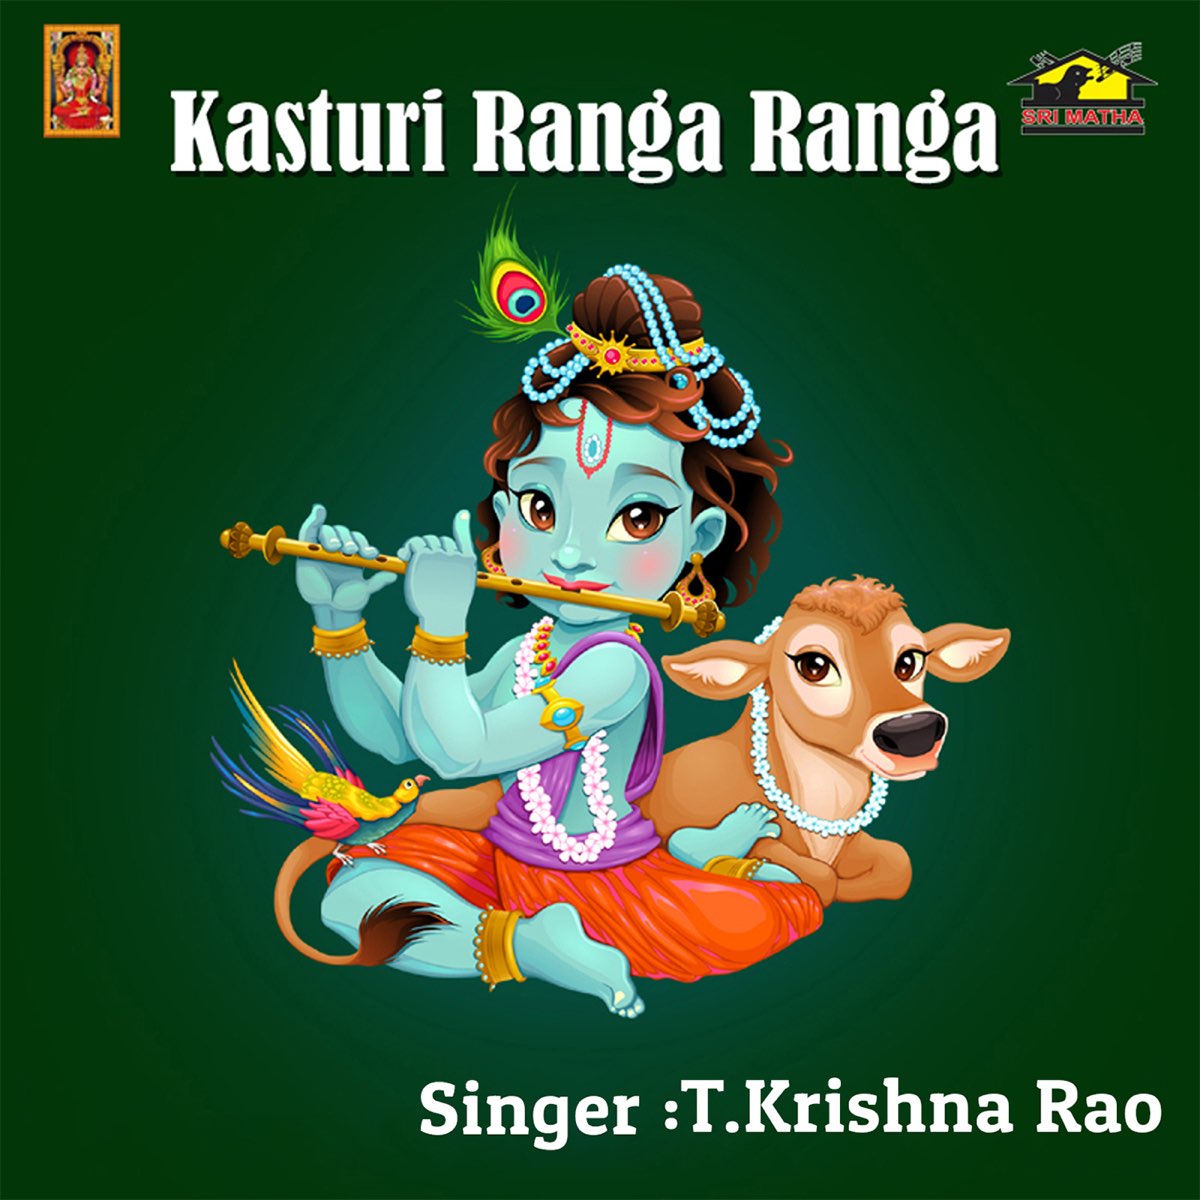 Kasturi Ranga Ranga - Vol 2 by T. Krishna Rao on Apple Music